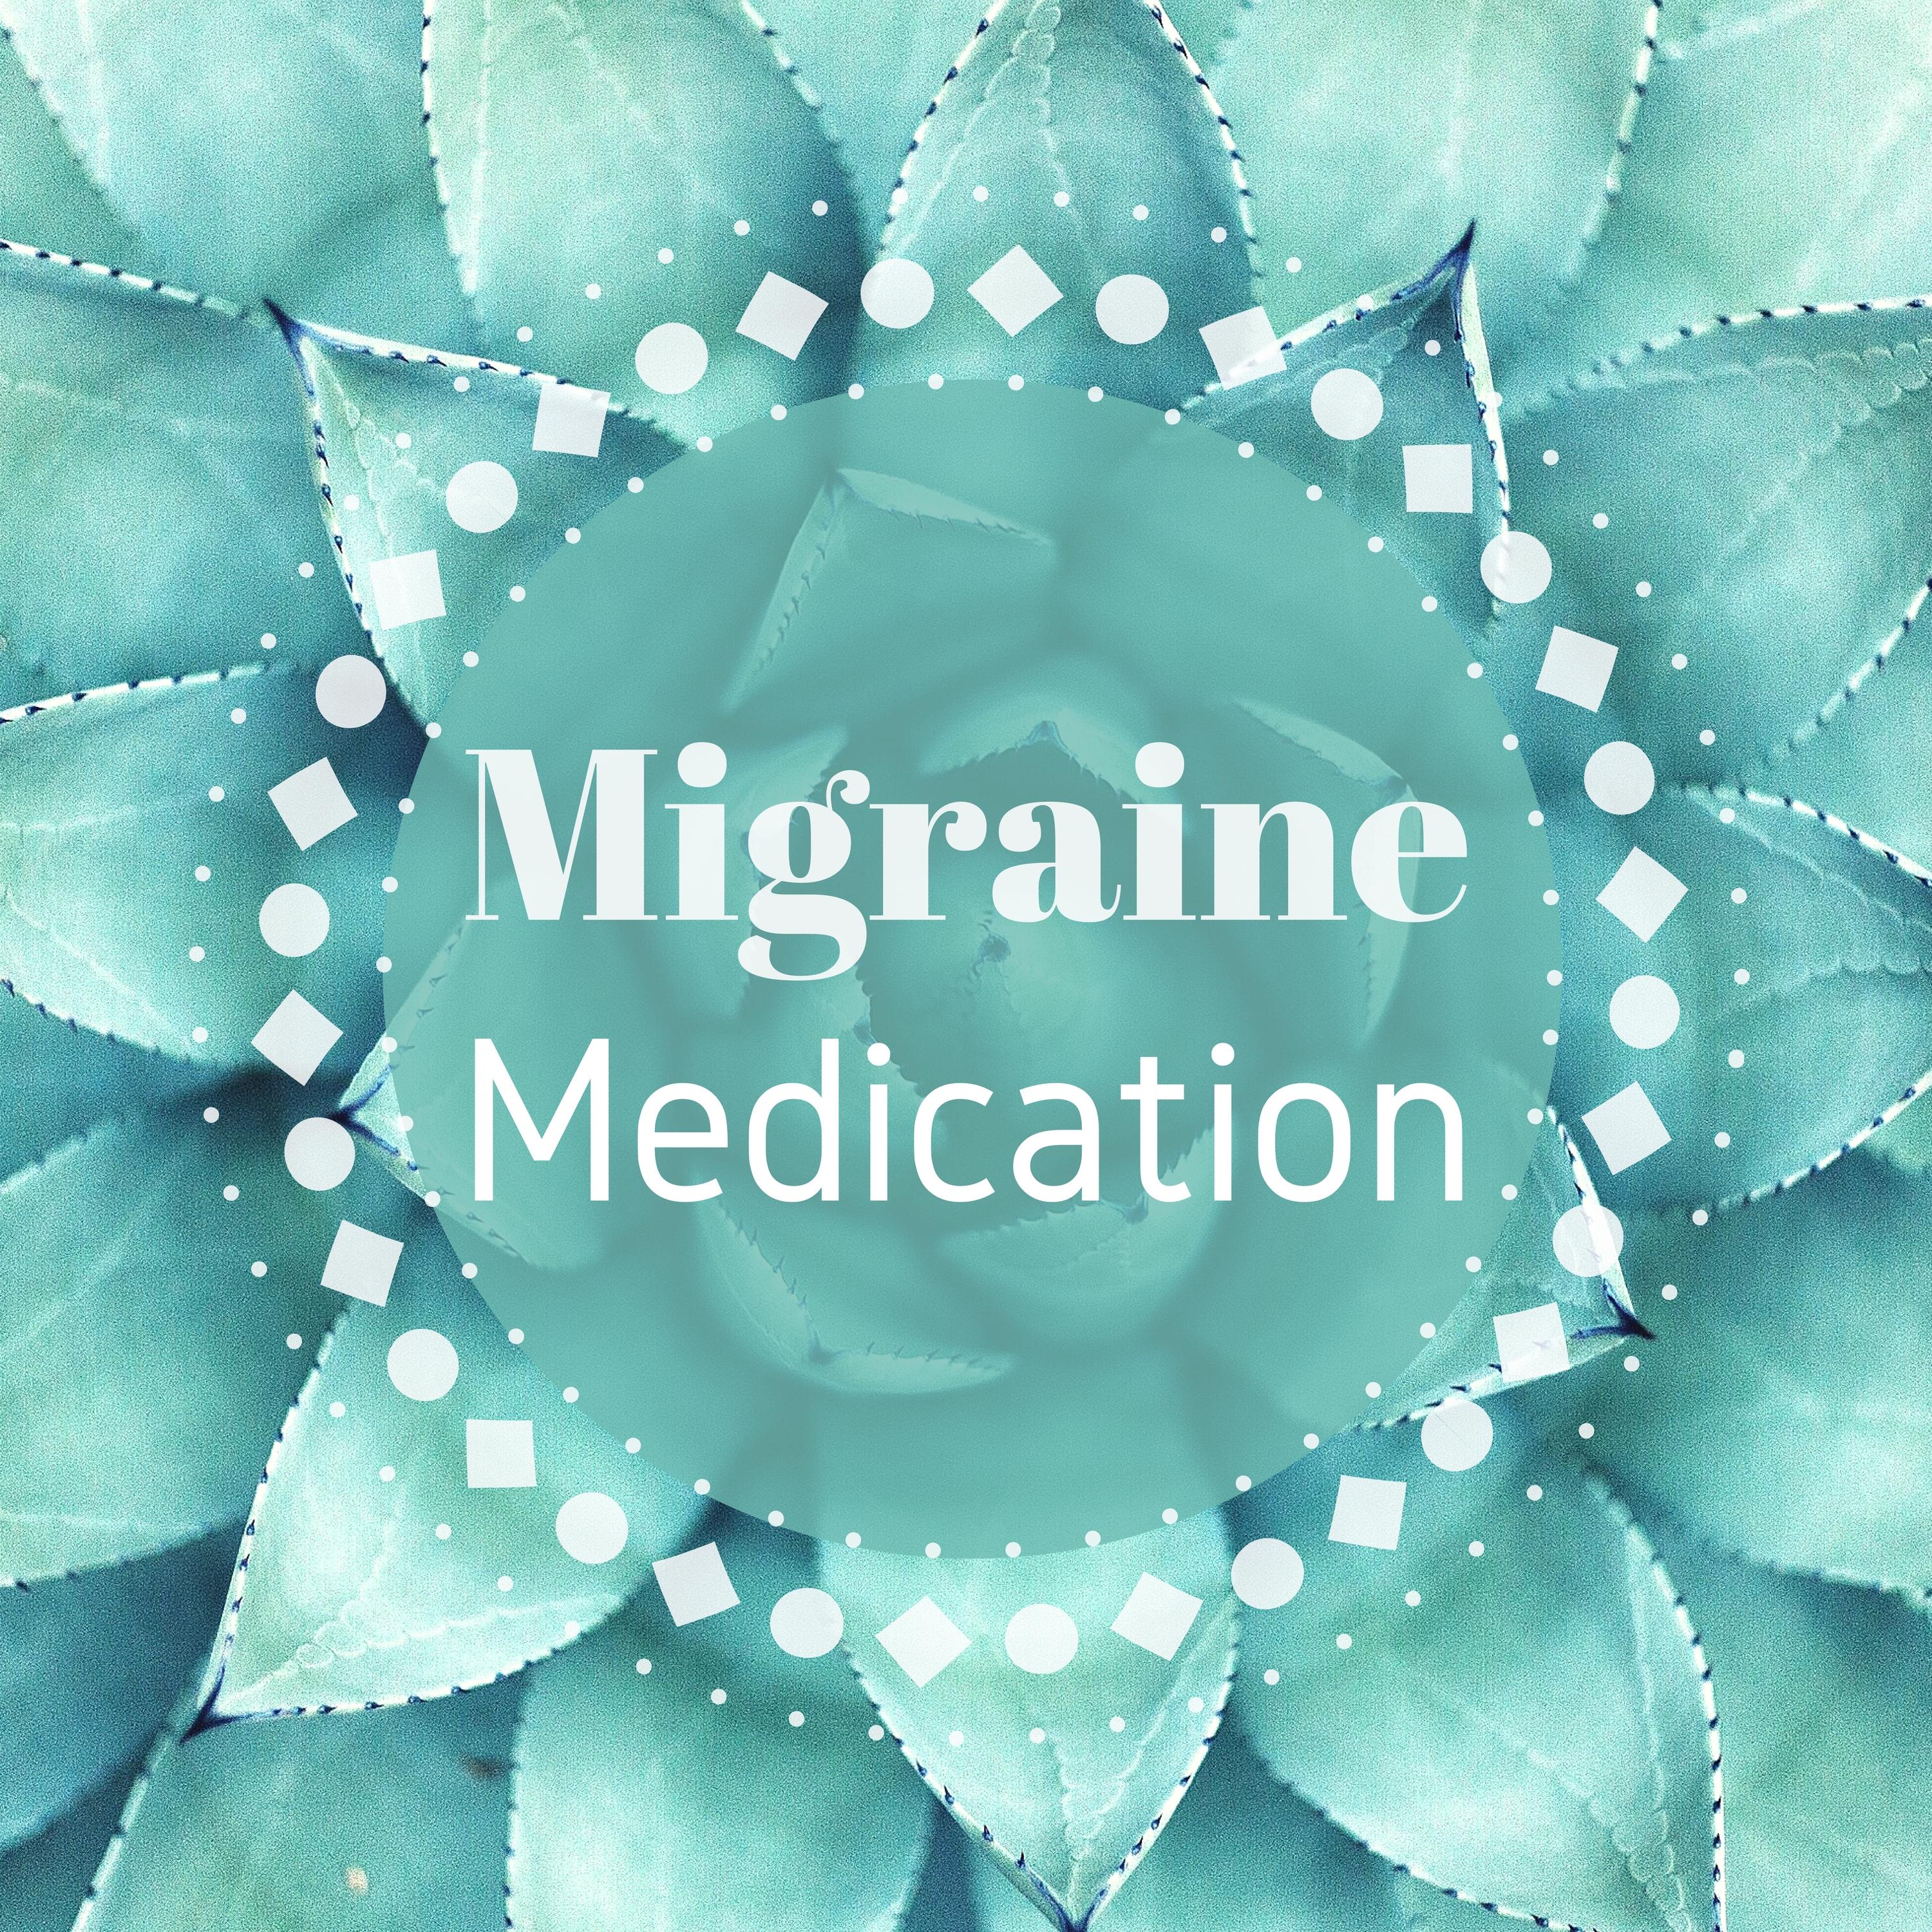 Migraine Medication